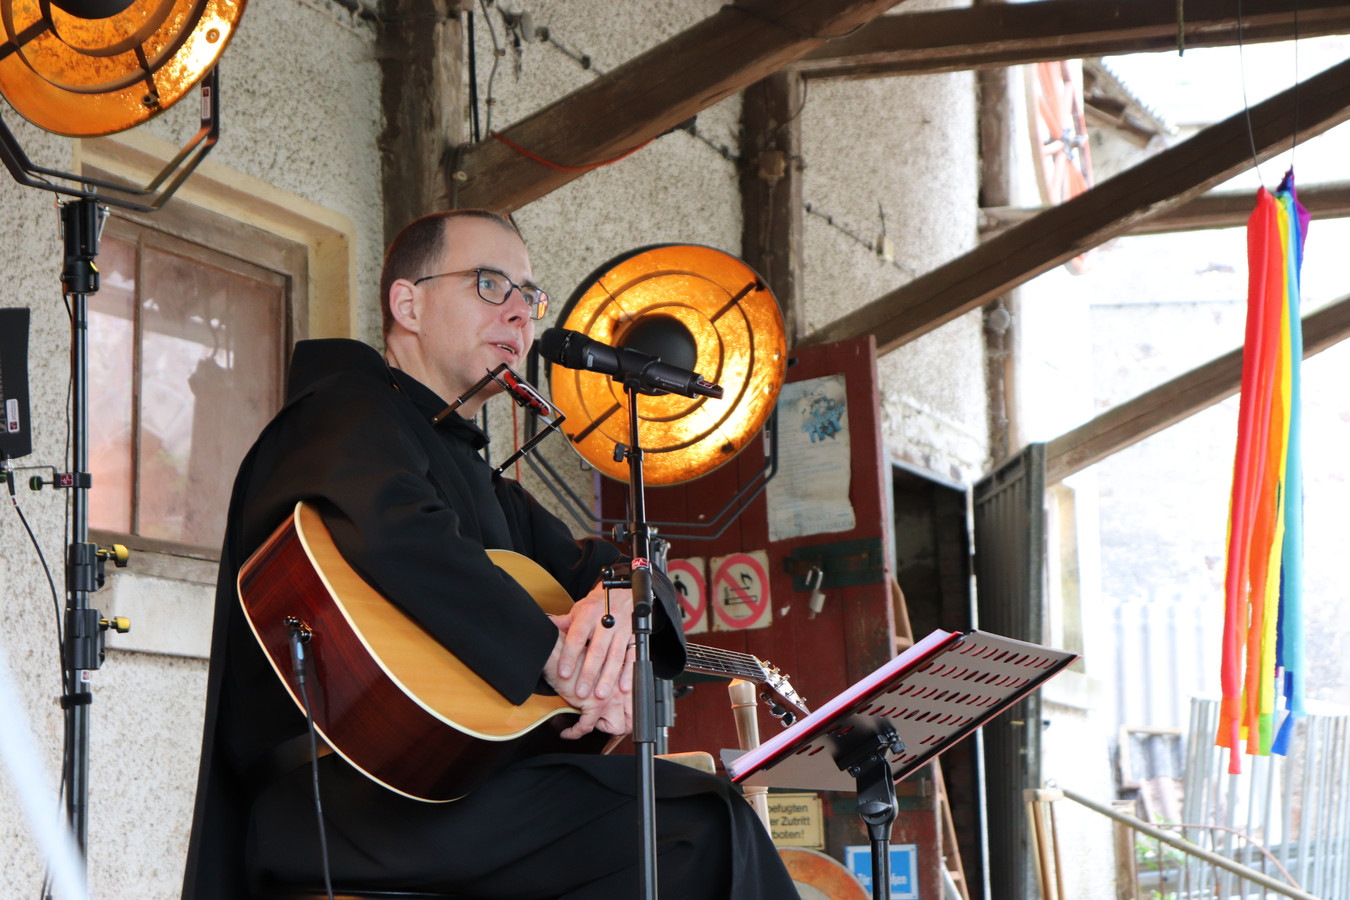 Broeder Thomas Quartier tijdens een concertlezing in de Zutphense Broederenkerk. Zijn muziek is geïnspireerd op Bob Dylan.